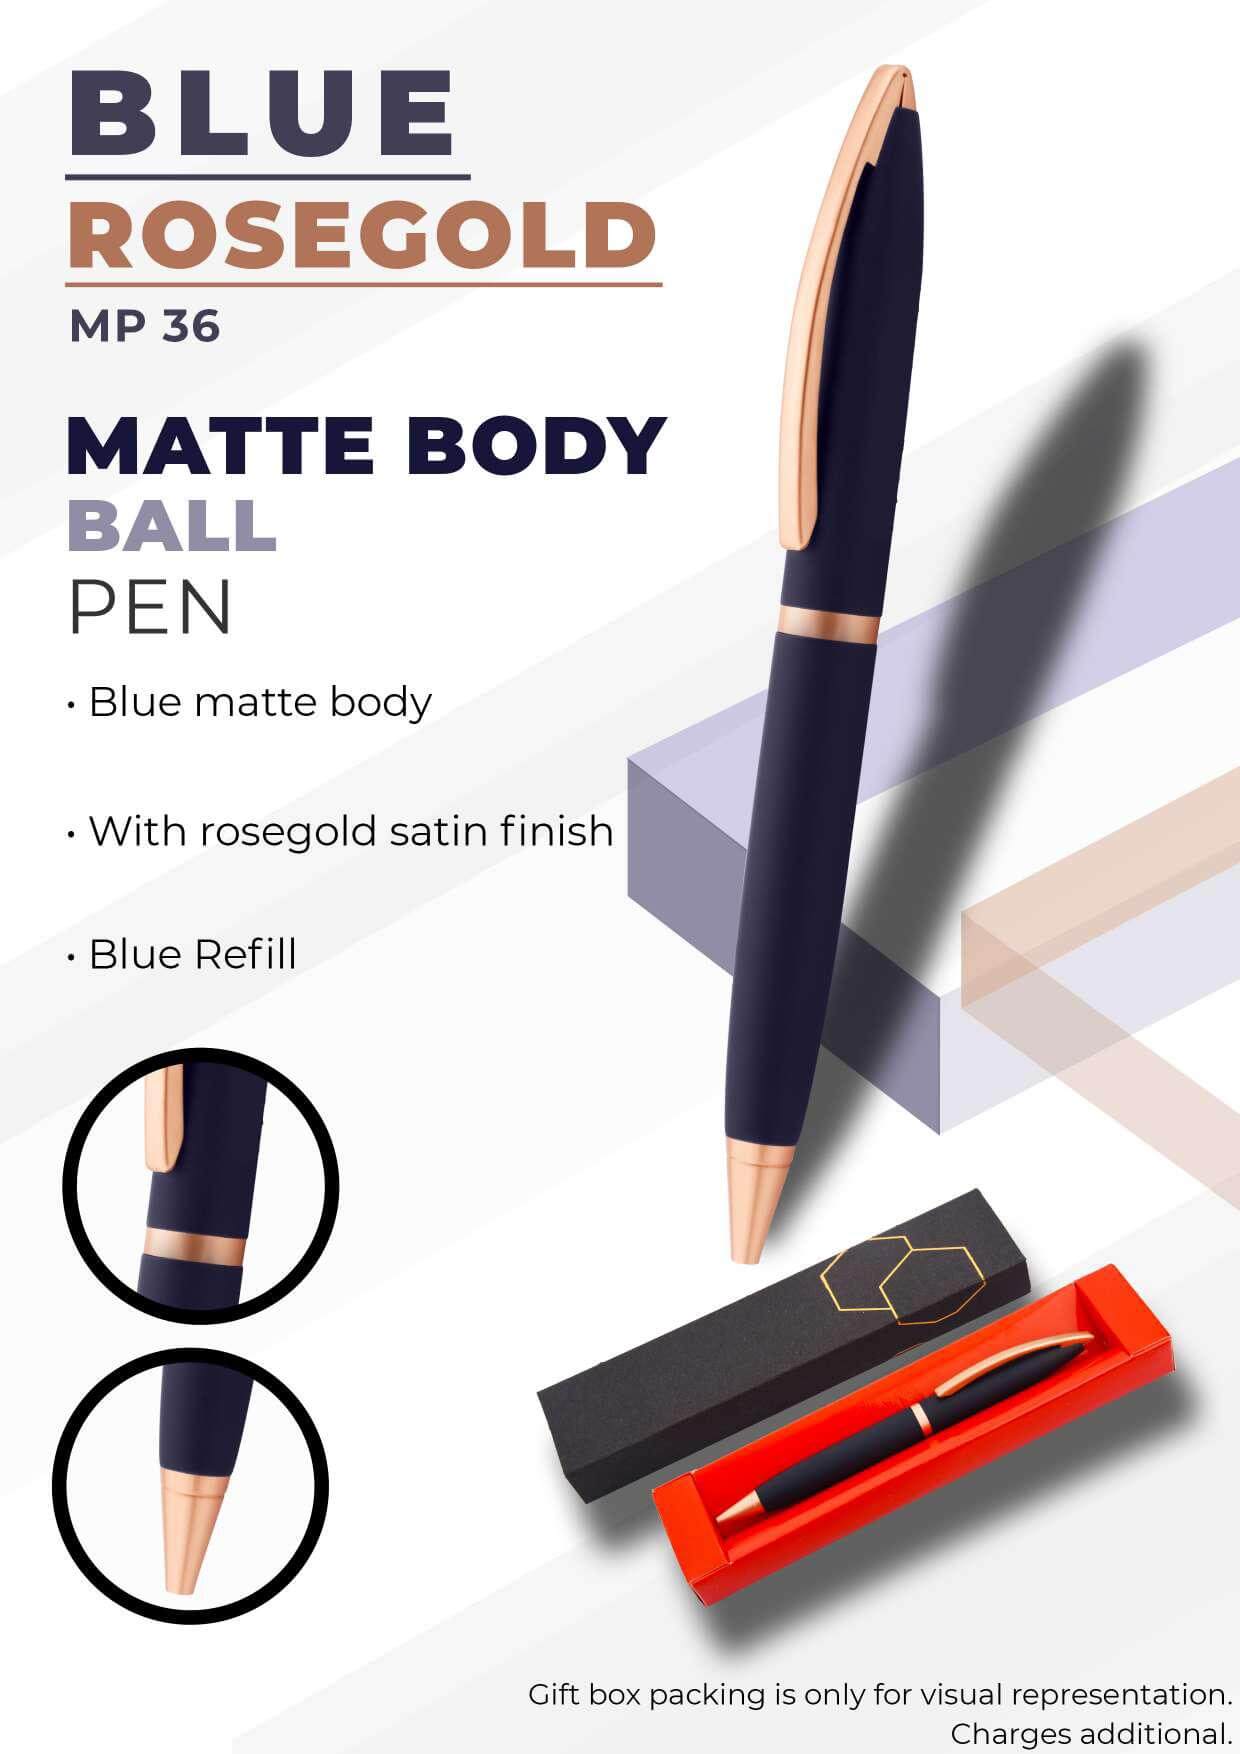 Matte Body Blue Rosegold Ball Pen